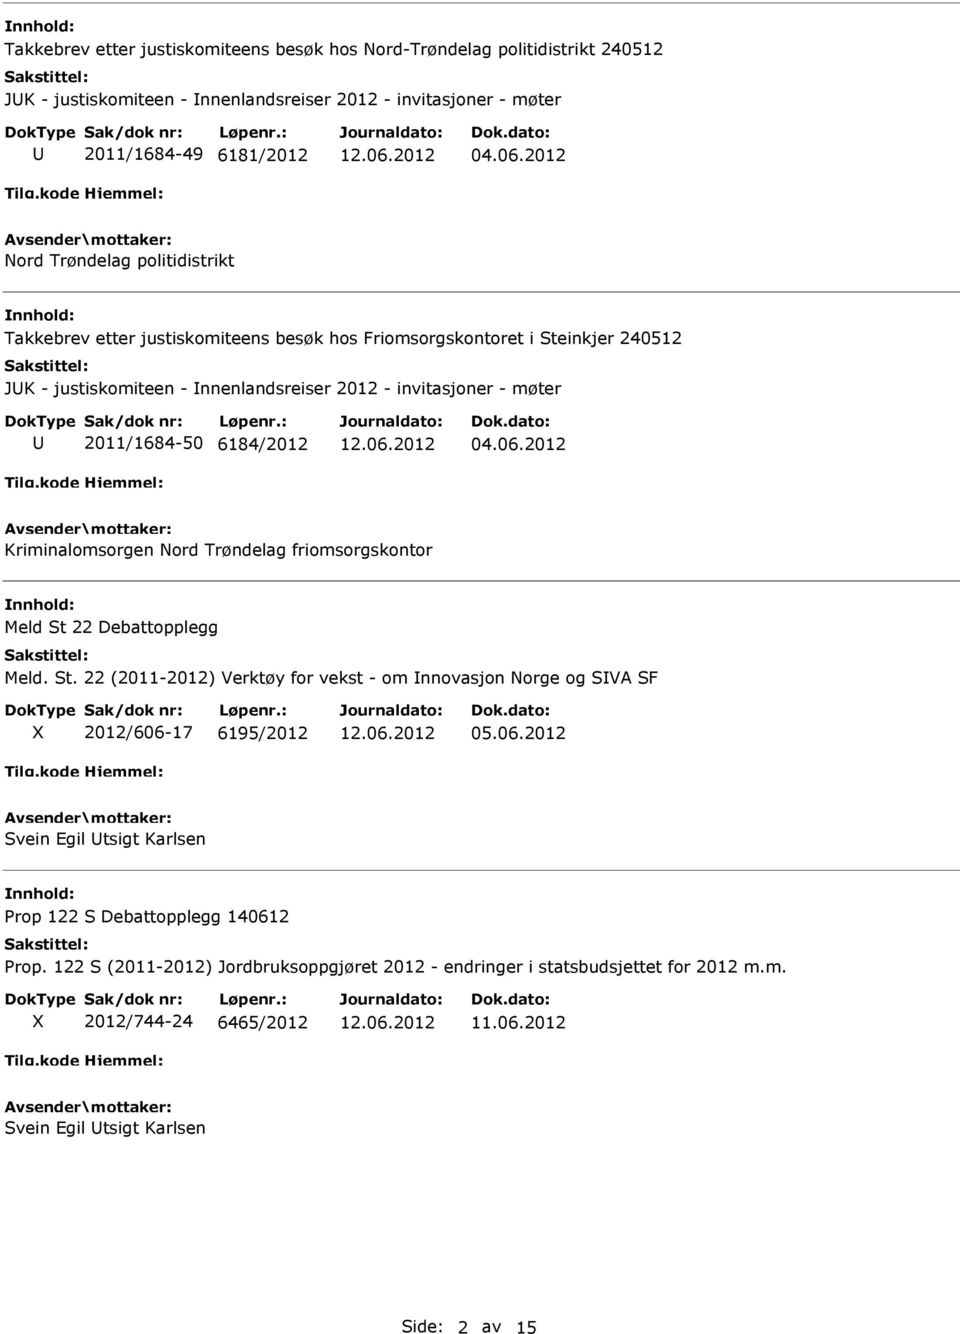 6184/2012 04.06.2012 Kriminalomsorgen Nord Trøndelag friomsorgskontor Meld St 22 Debattopplegg Meld. St. 22 (2011-2012) Verktøy for vekst - om nnovasjon Norge og SVA SF 2012/606-17 6195/2012 05.